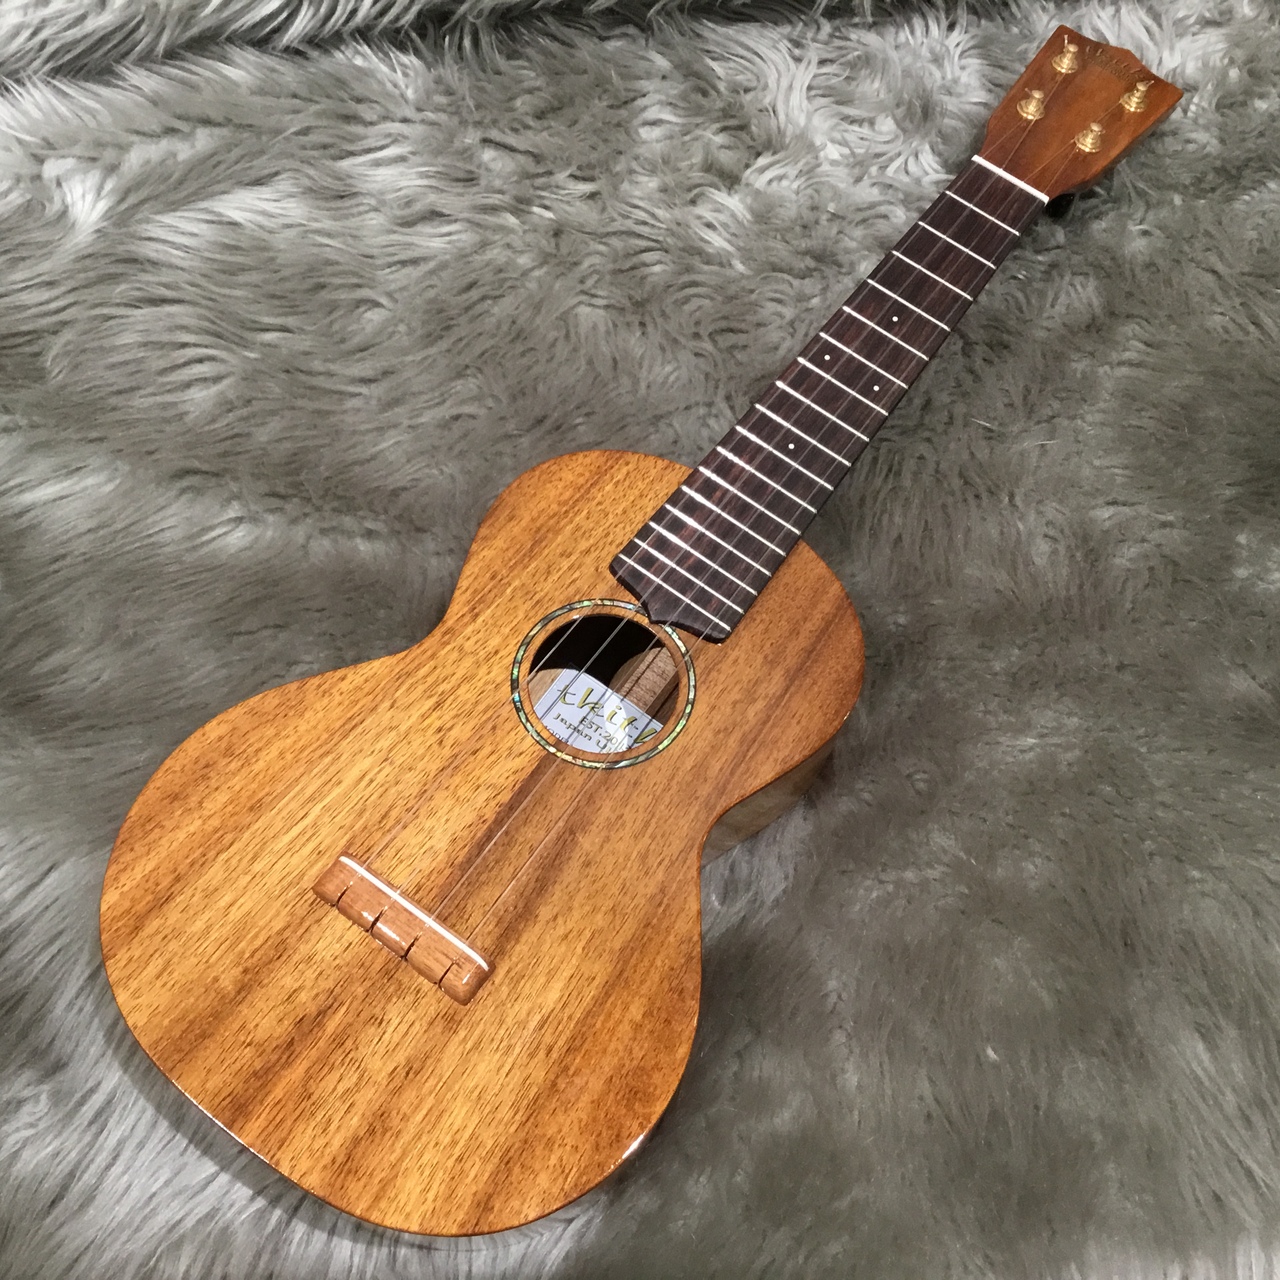 tkitki ukulele (ティキティキ)HKC-ABALONE